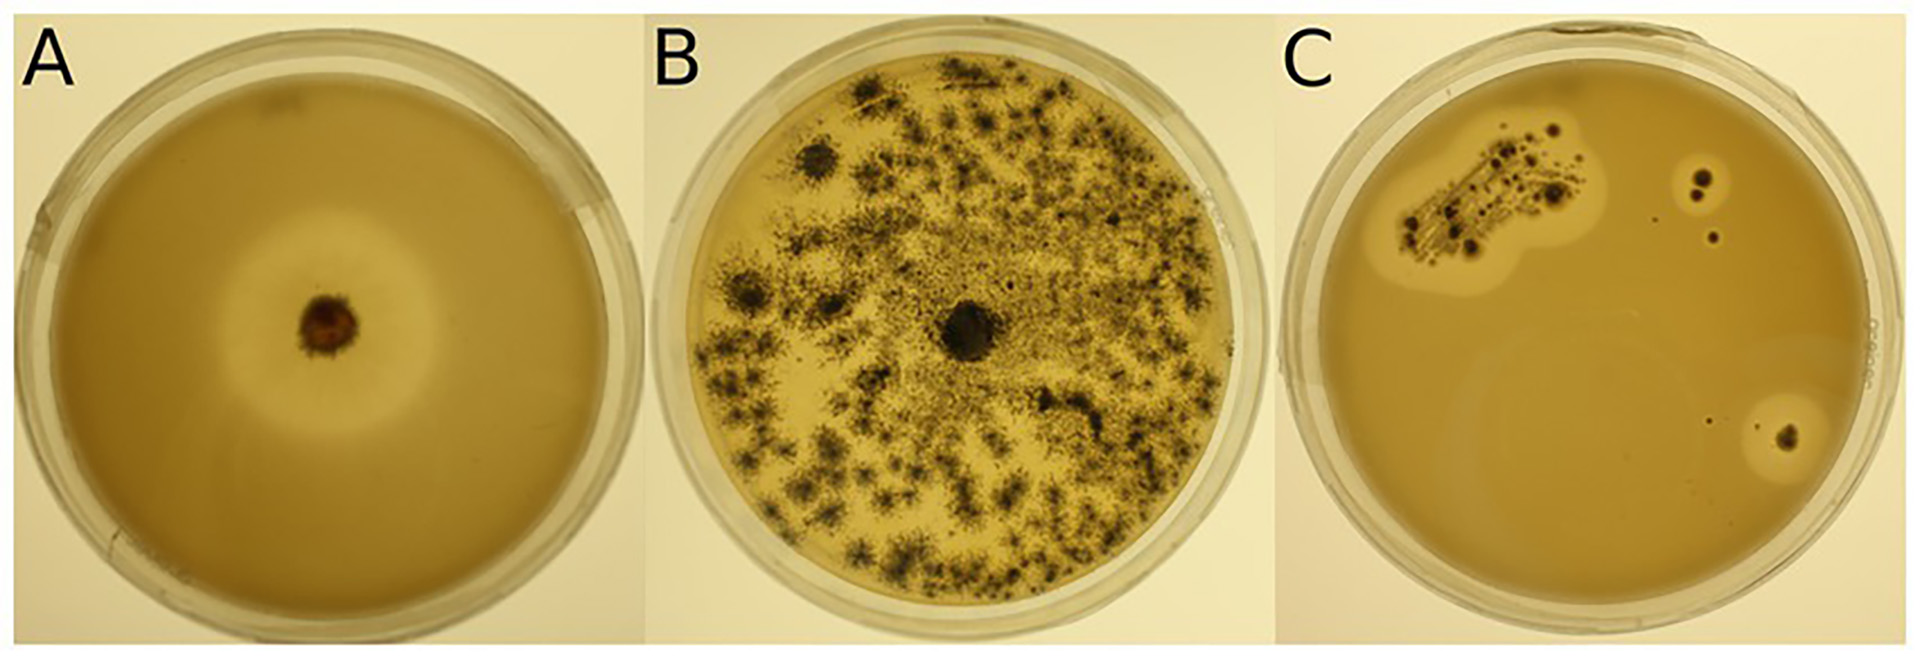 Ejemplos de placas de medio mineral más Impranil ( MM + Imp) inoculadas con cepas microbianas para la evaluación de la degradación de Impranil . (A) Foto de la cepa 943 ( Lachnellula sp.) cultivada en MM + Imp durante 7 días. (B) Foto de la cepa 1205 ( Pseudogymnoascus pannorum ) cultivada en MM + Imp durante 14 días. (C) Foto de la cepa 985 ( Amycolatopsis sp.) cultivada en MM + Imp durante 28 días. (Crédito: Beat Frey)